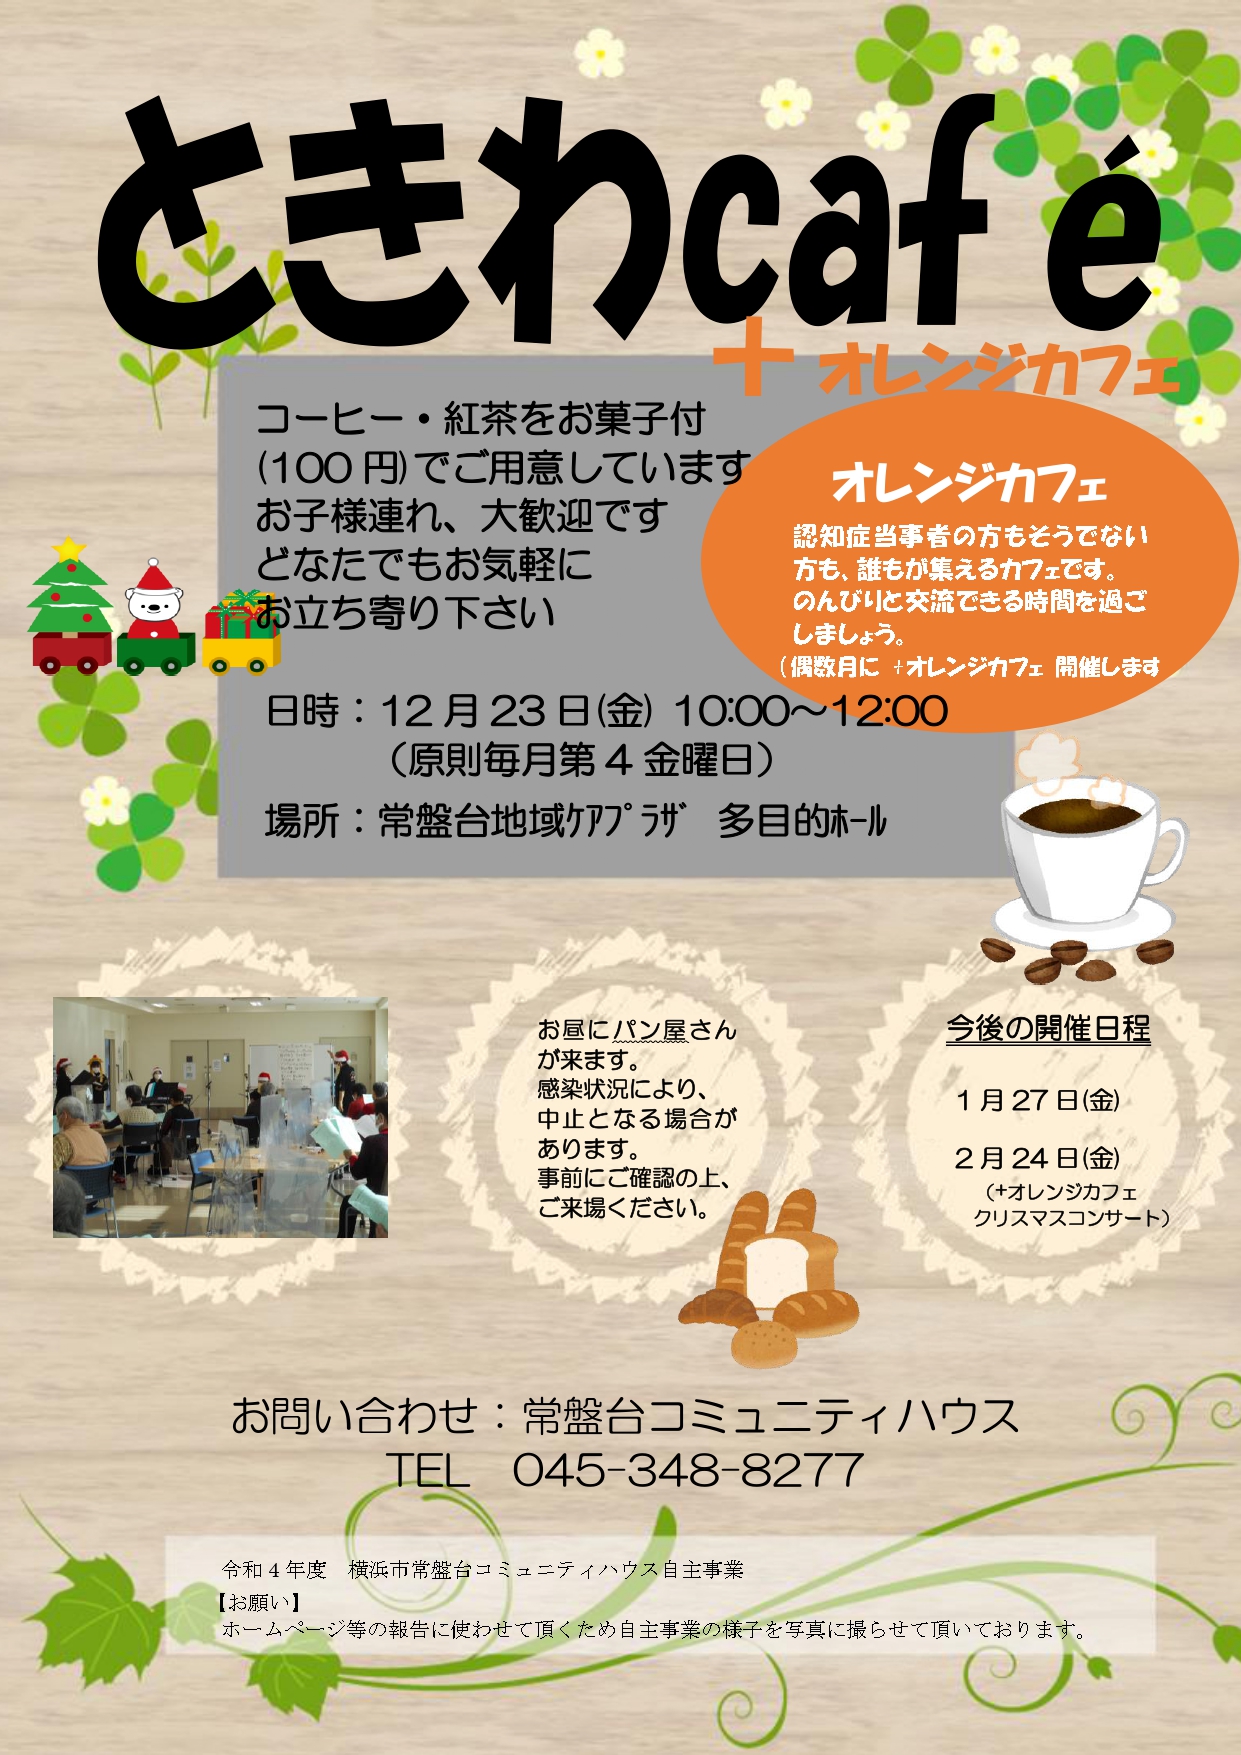 ときわCafé+オレンジカフェ12月開催のお知らせ